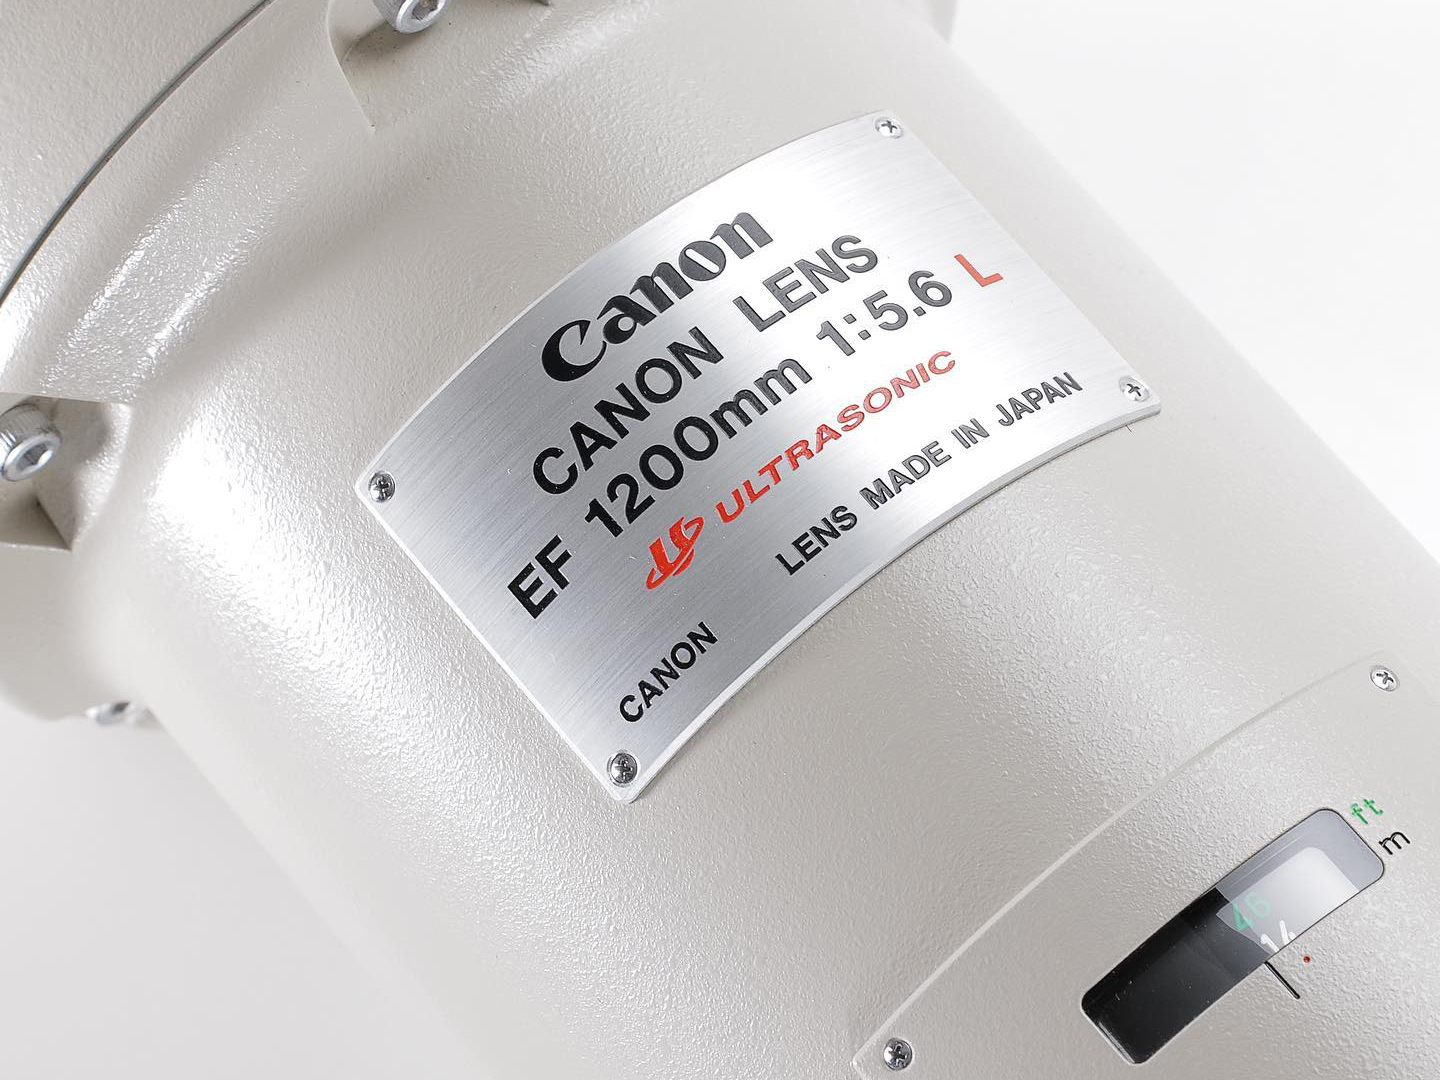 Ống kính Canon EF 1200mm F5.6 L USM, chiếc ống kính AF SLR dài nhất thế giới sắp được bán đấu giá